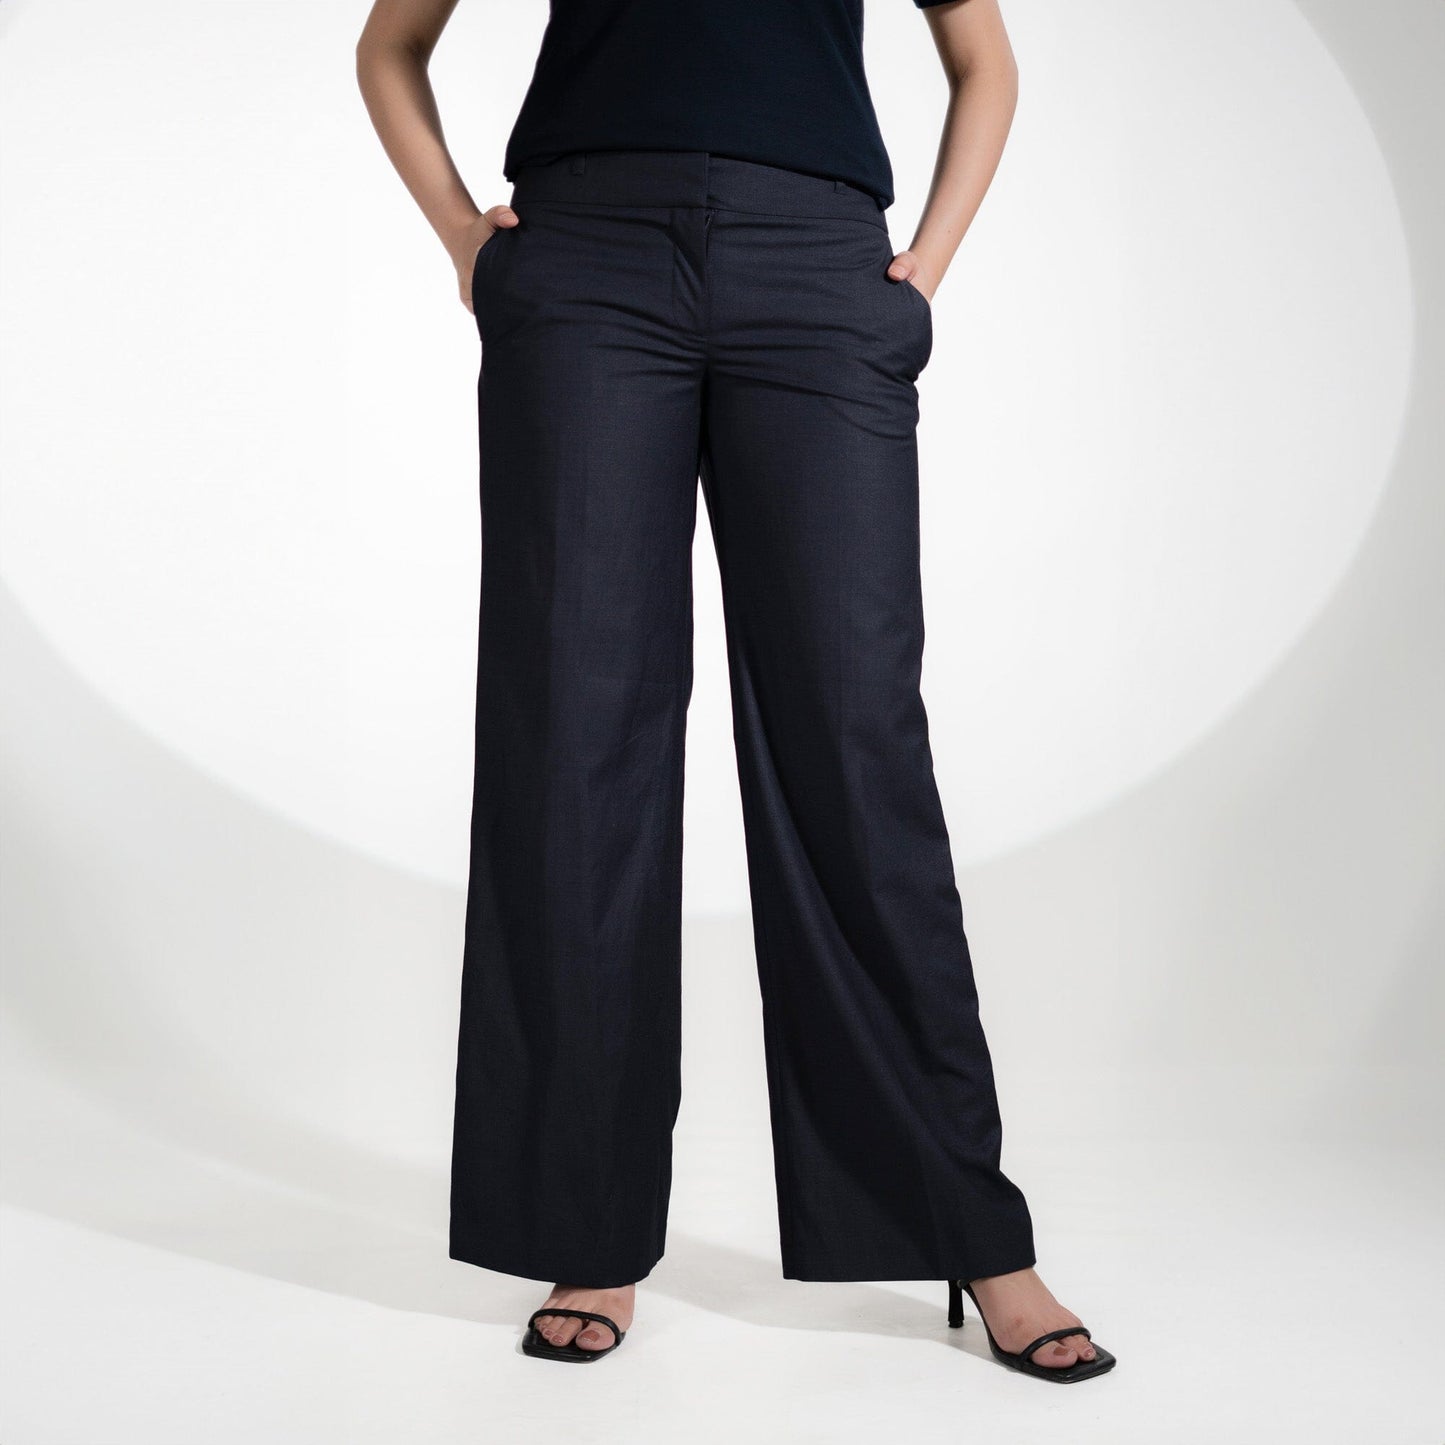 HM Women's Oviedo Regular Fit Dress Pants Women's Cargo Pants First Choice Navy 26 32